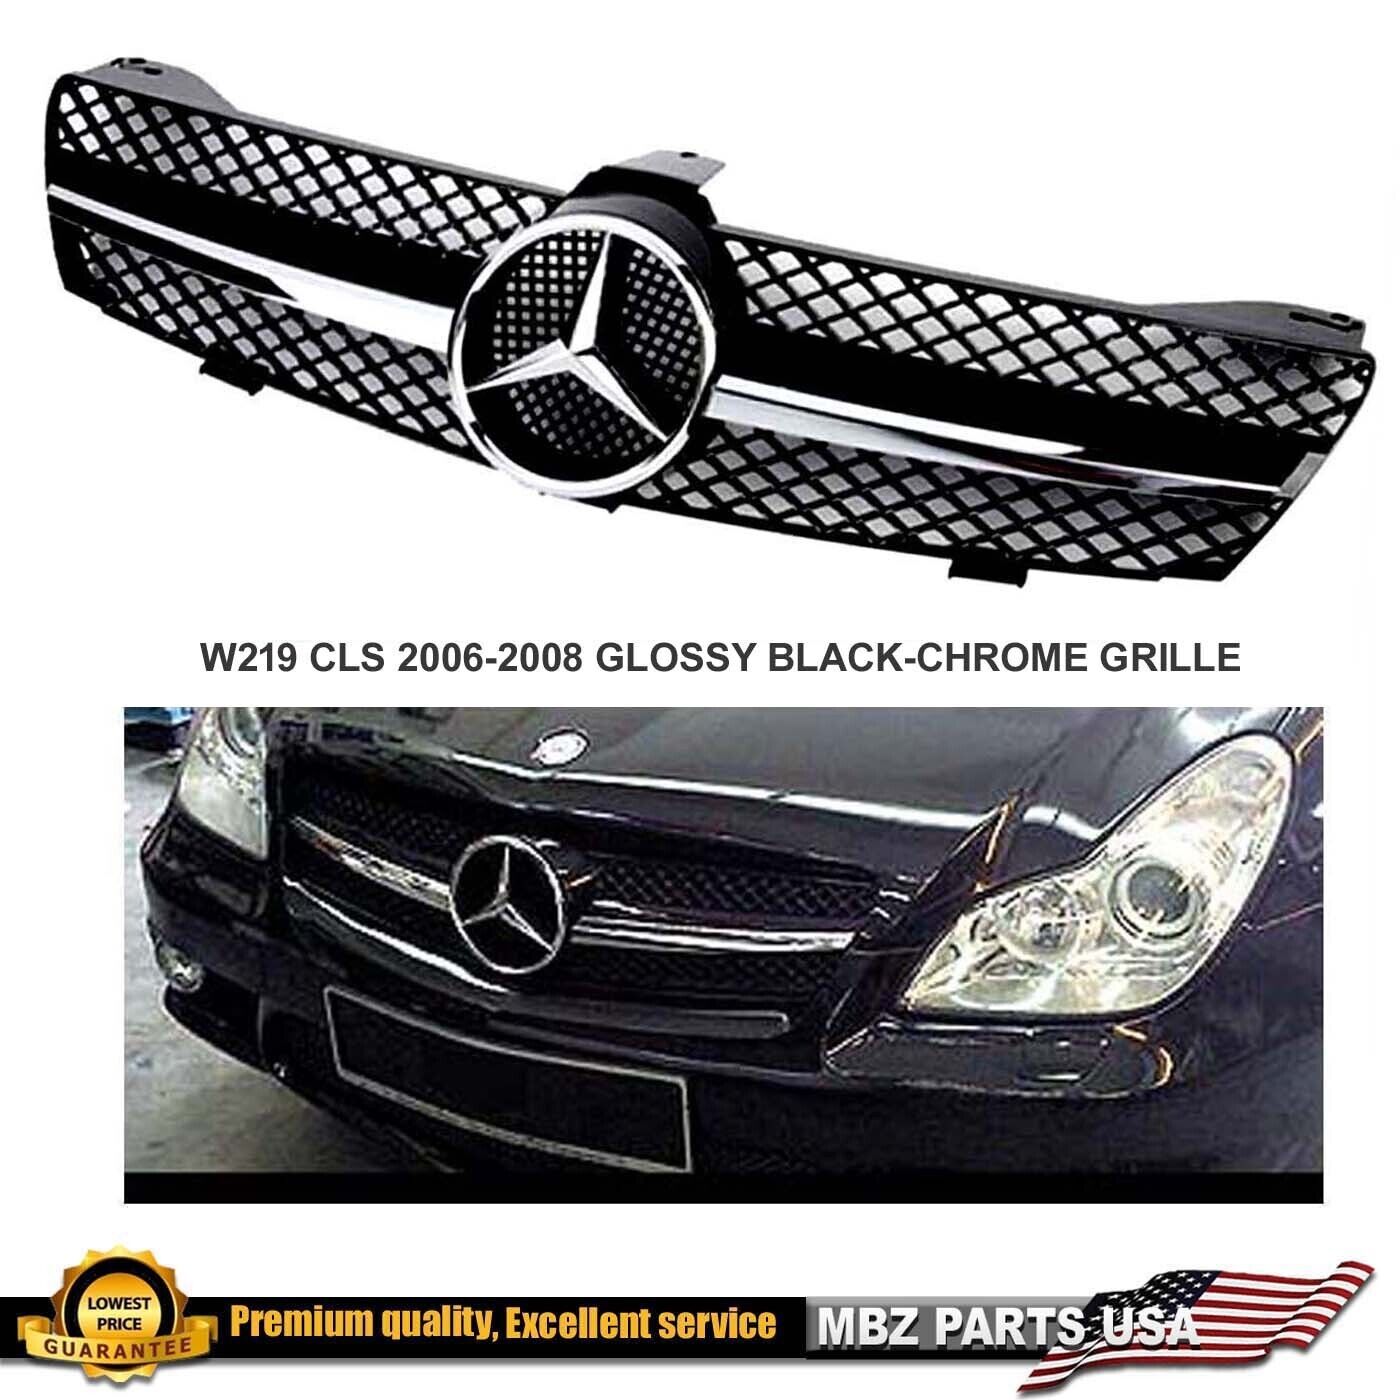 2006 2007 2008 CLS63 CLS600 CLS500 CLS55 Black-Chrome Grille CLS AMG emblem Star